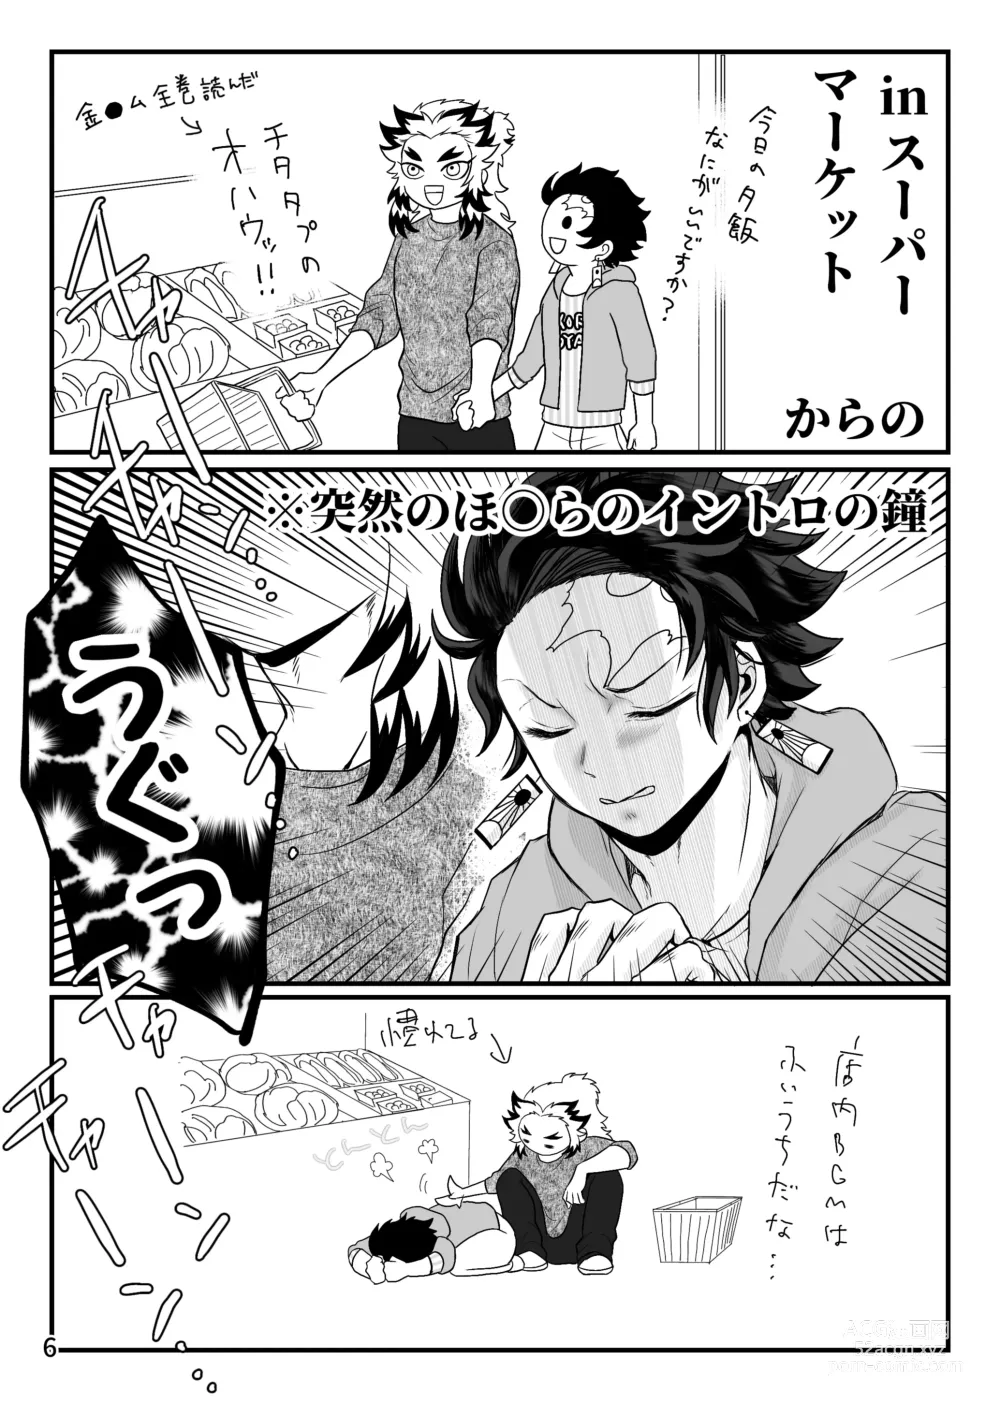 Page 7 of doujinshi Tsuyobi ga Sugiru zo, Shounen!